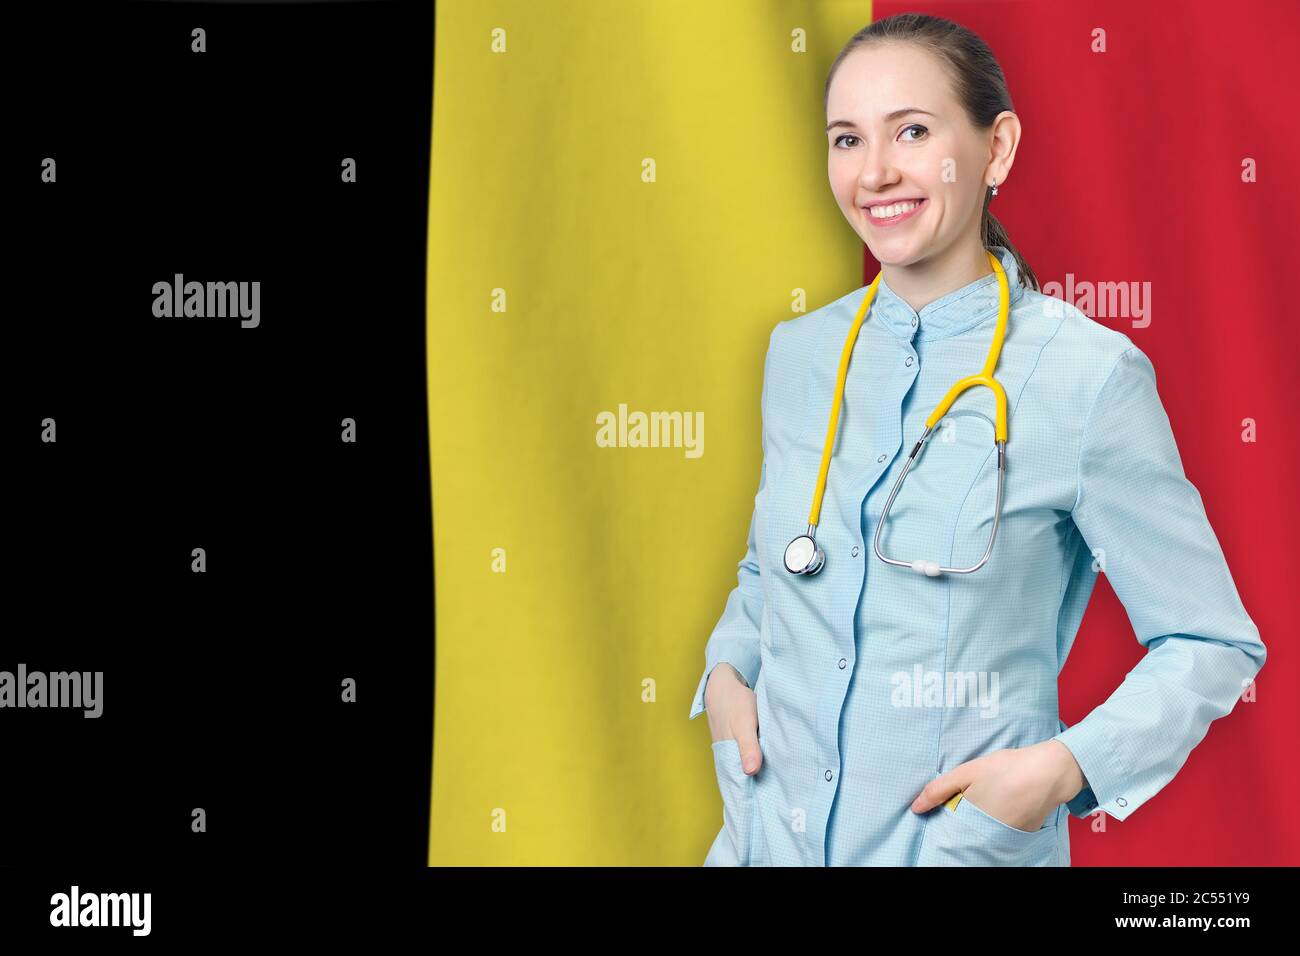 Belgio sanità immagini e fotografie stock ad alta risoluzione - Alamy